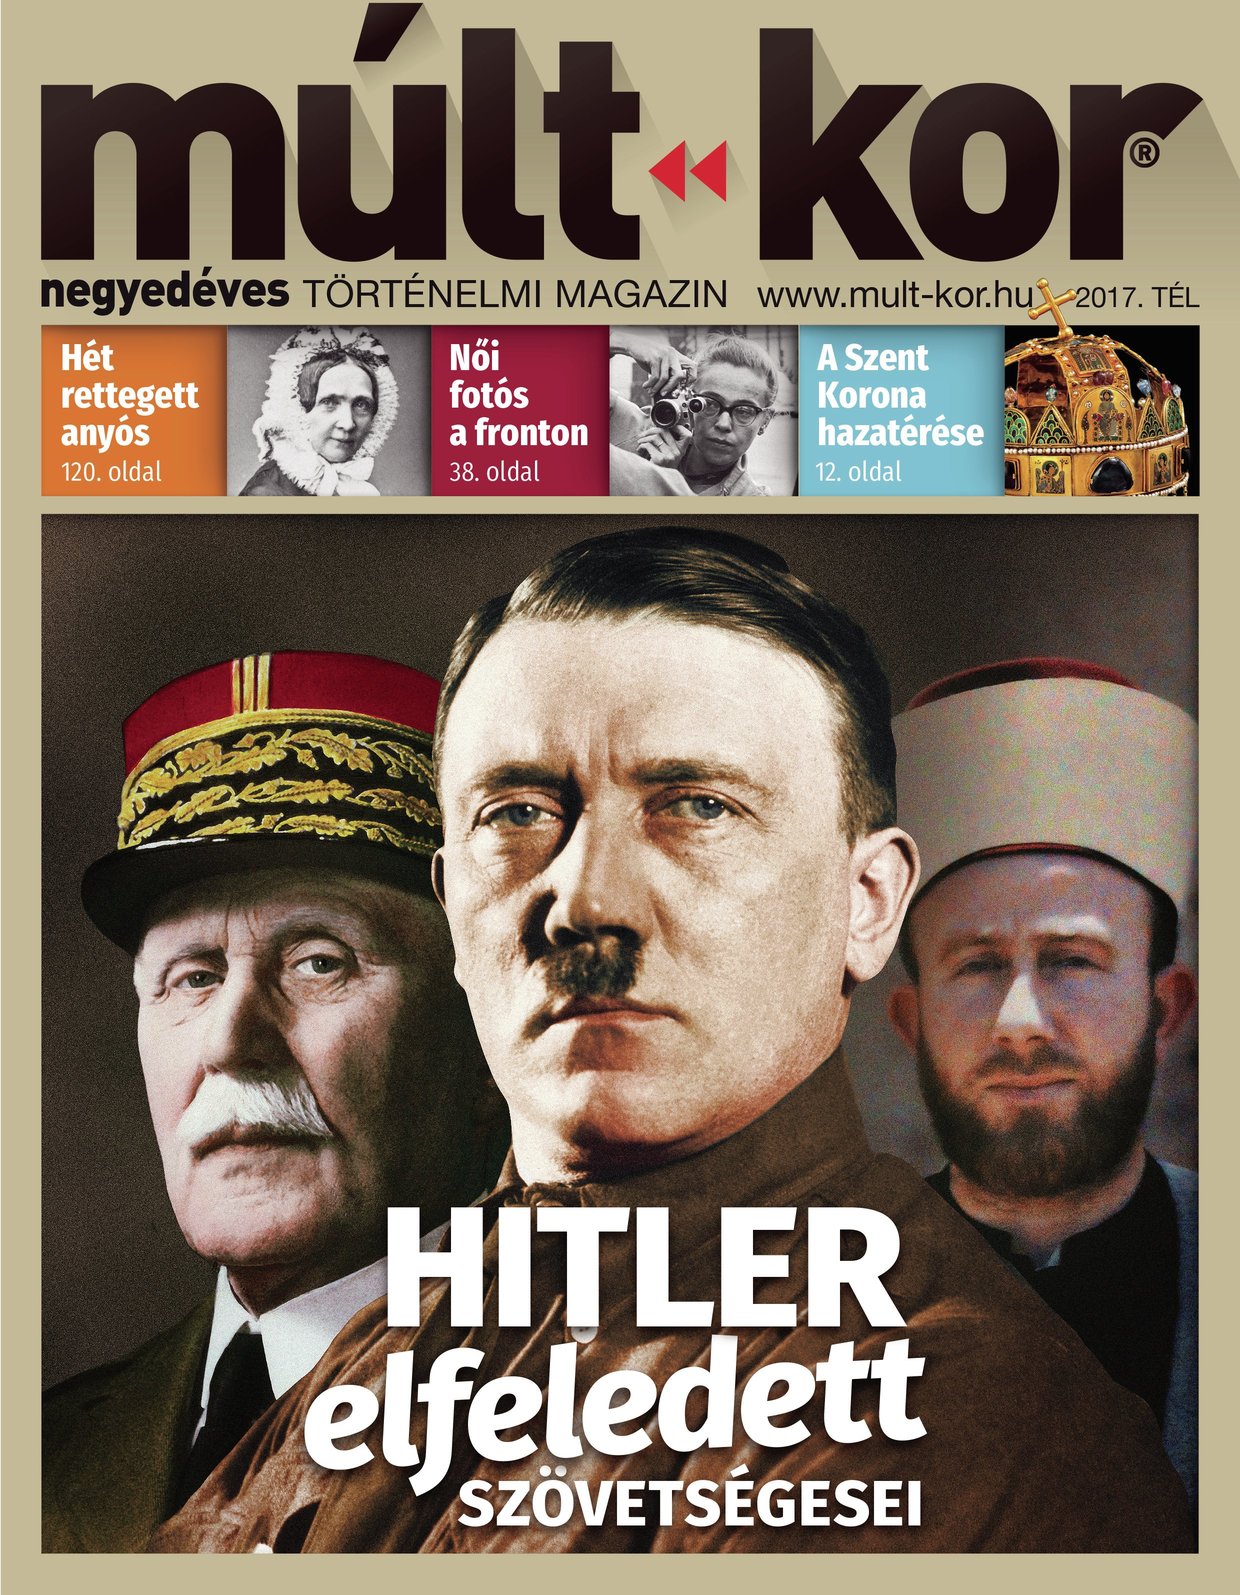 2017. tél: Hitler elfeledett szövetségesei